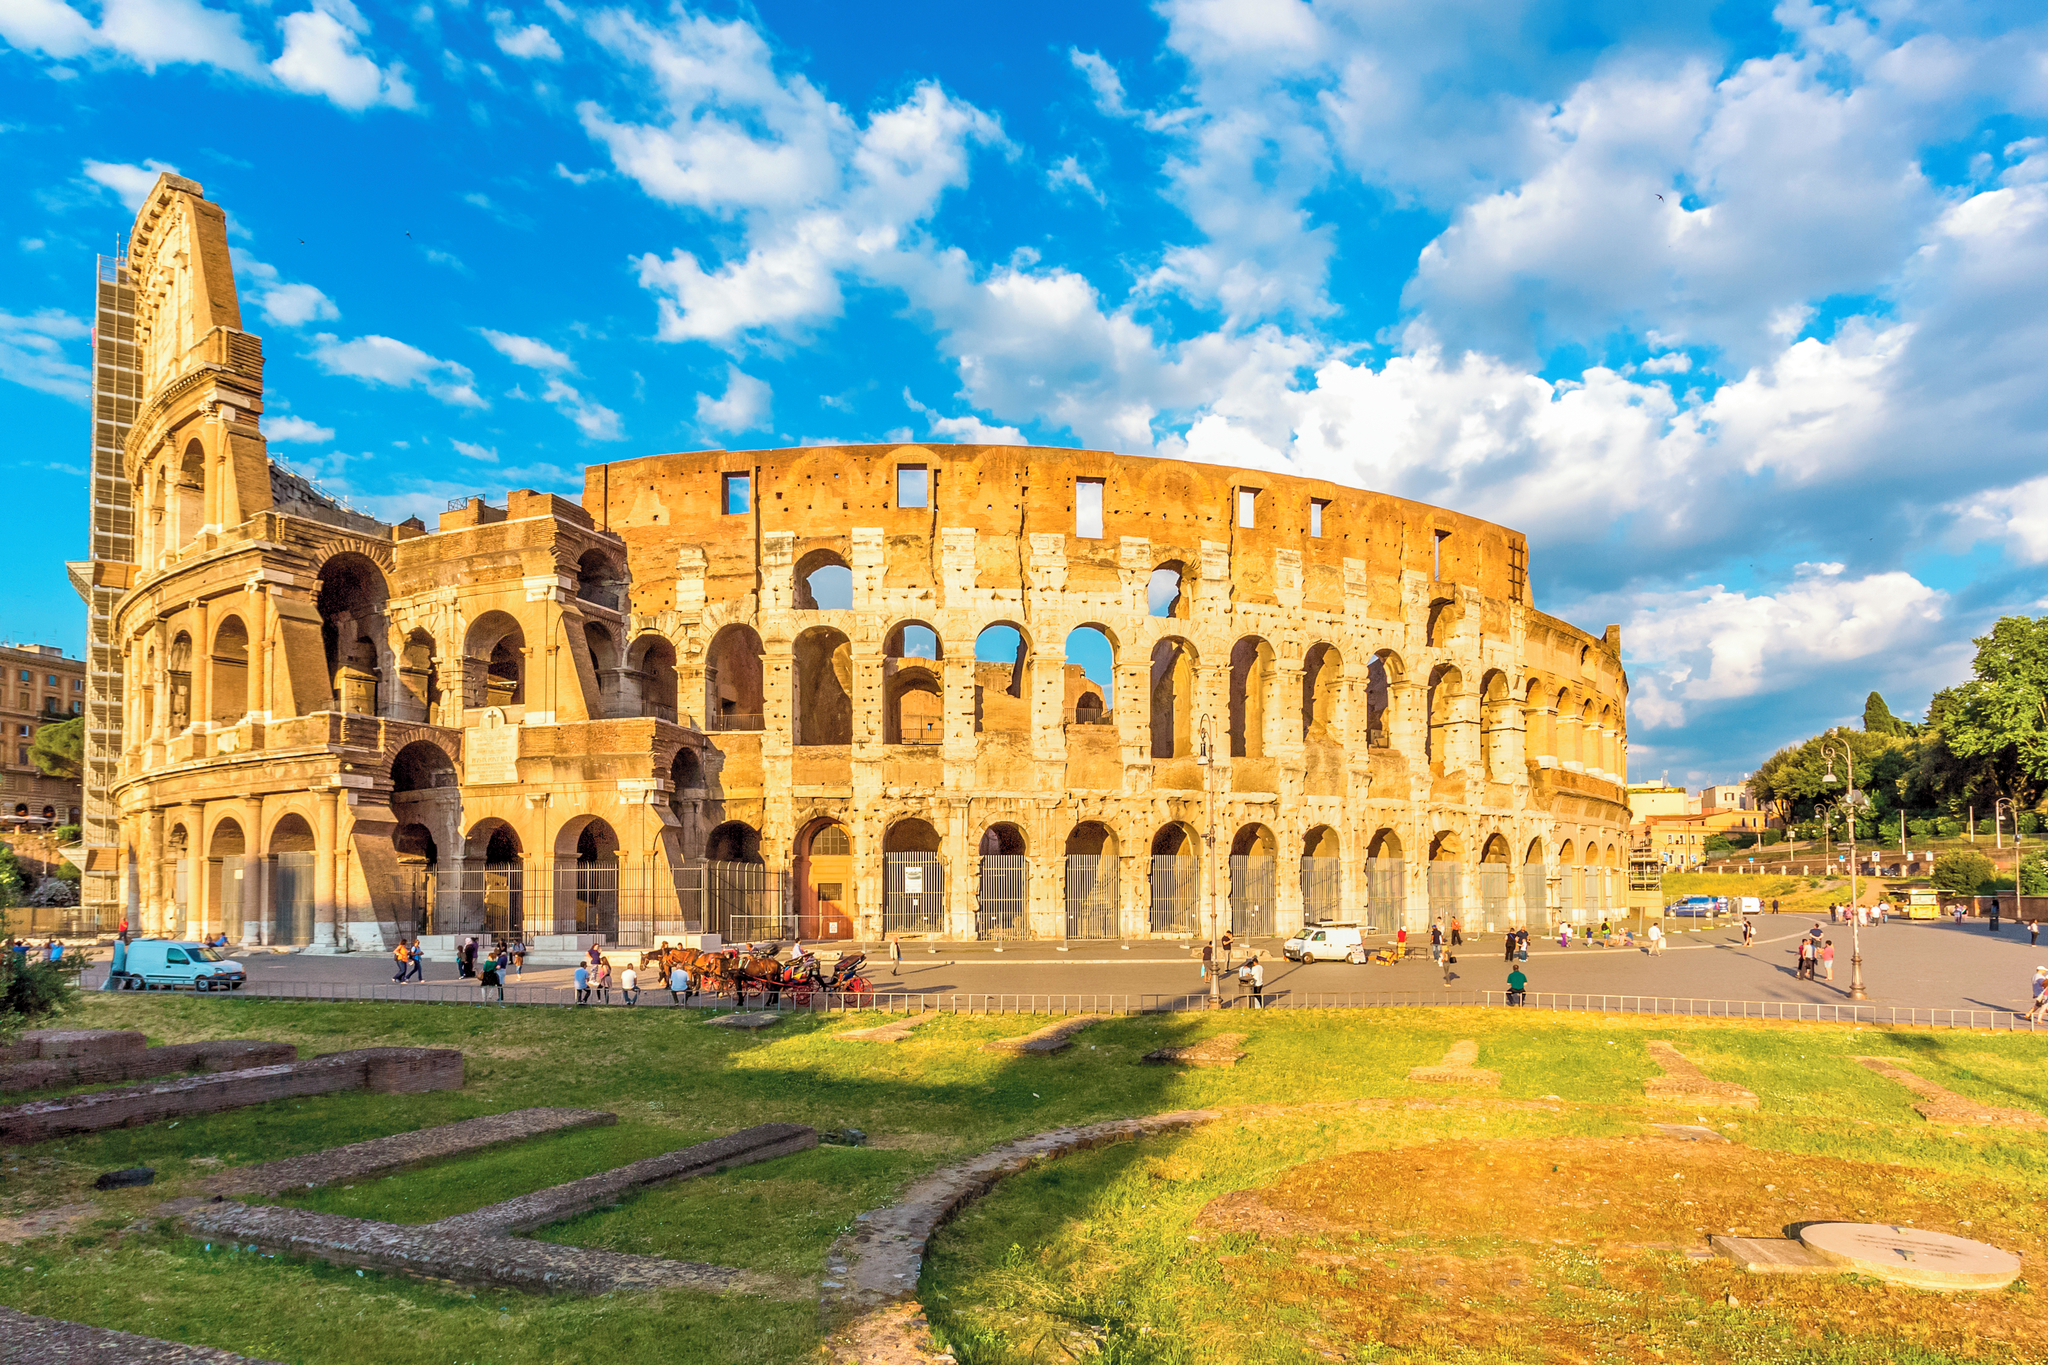 Explore classical Rome